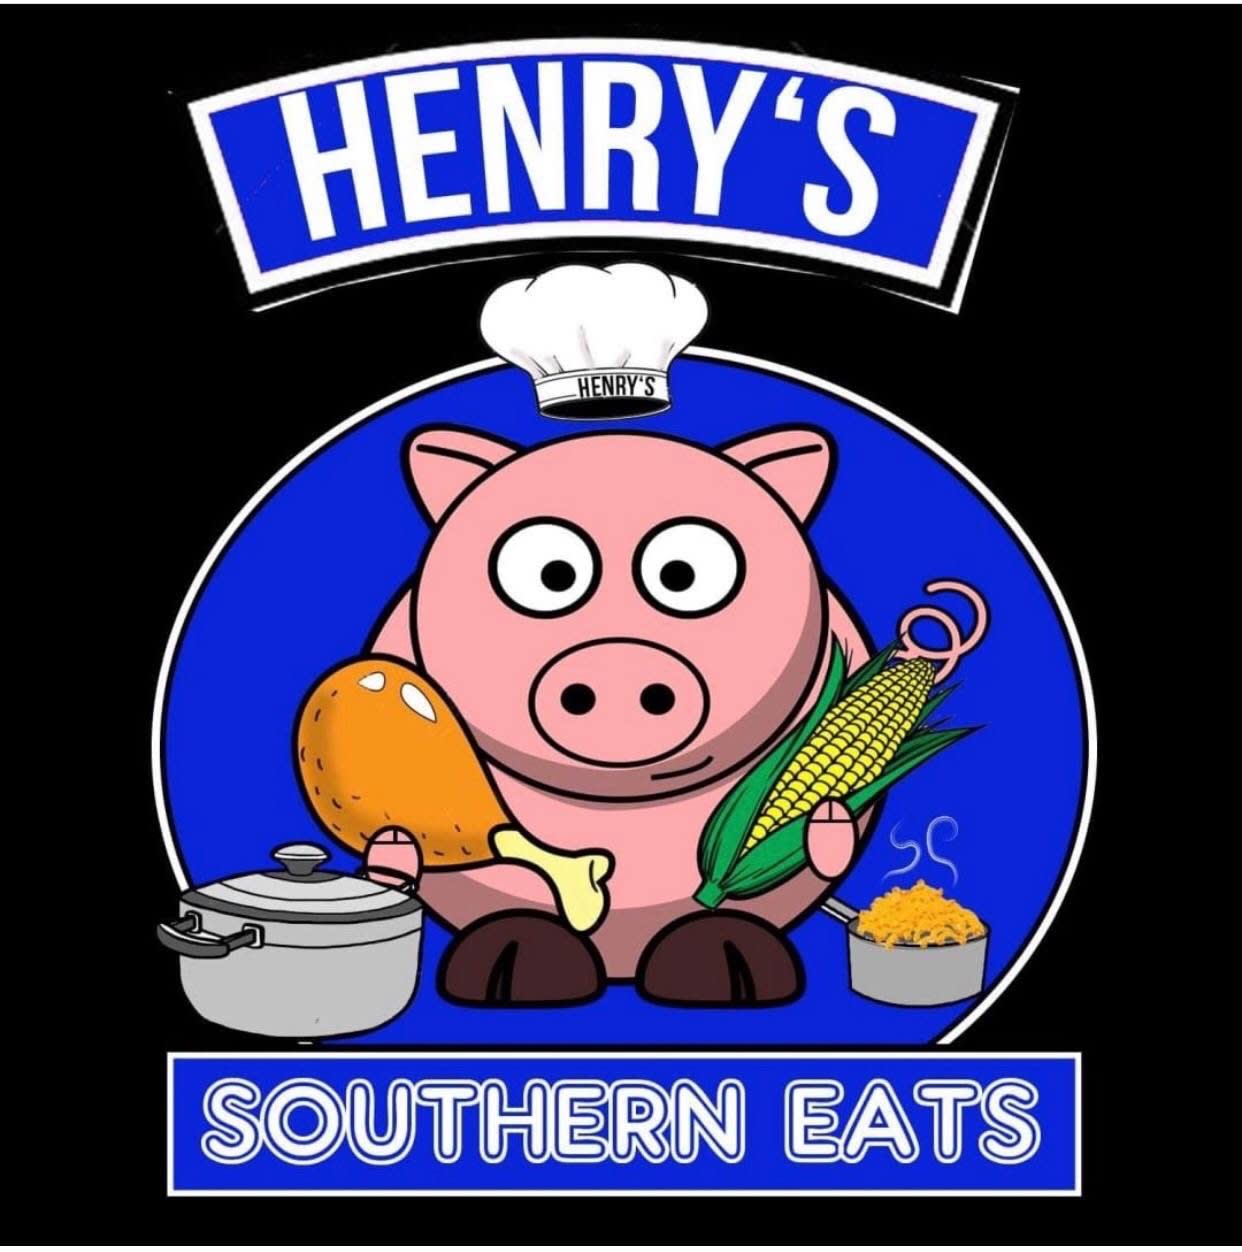 Henry’s Southern Eats